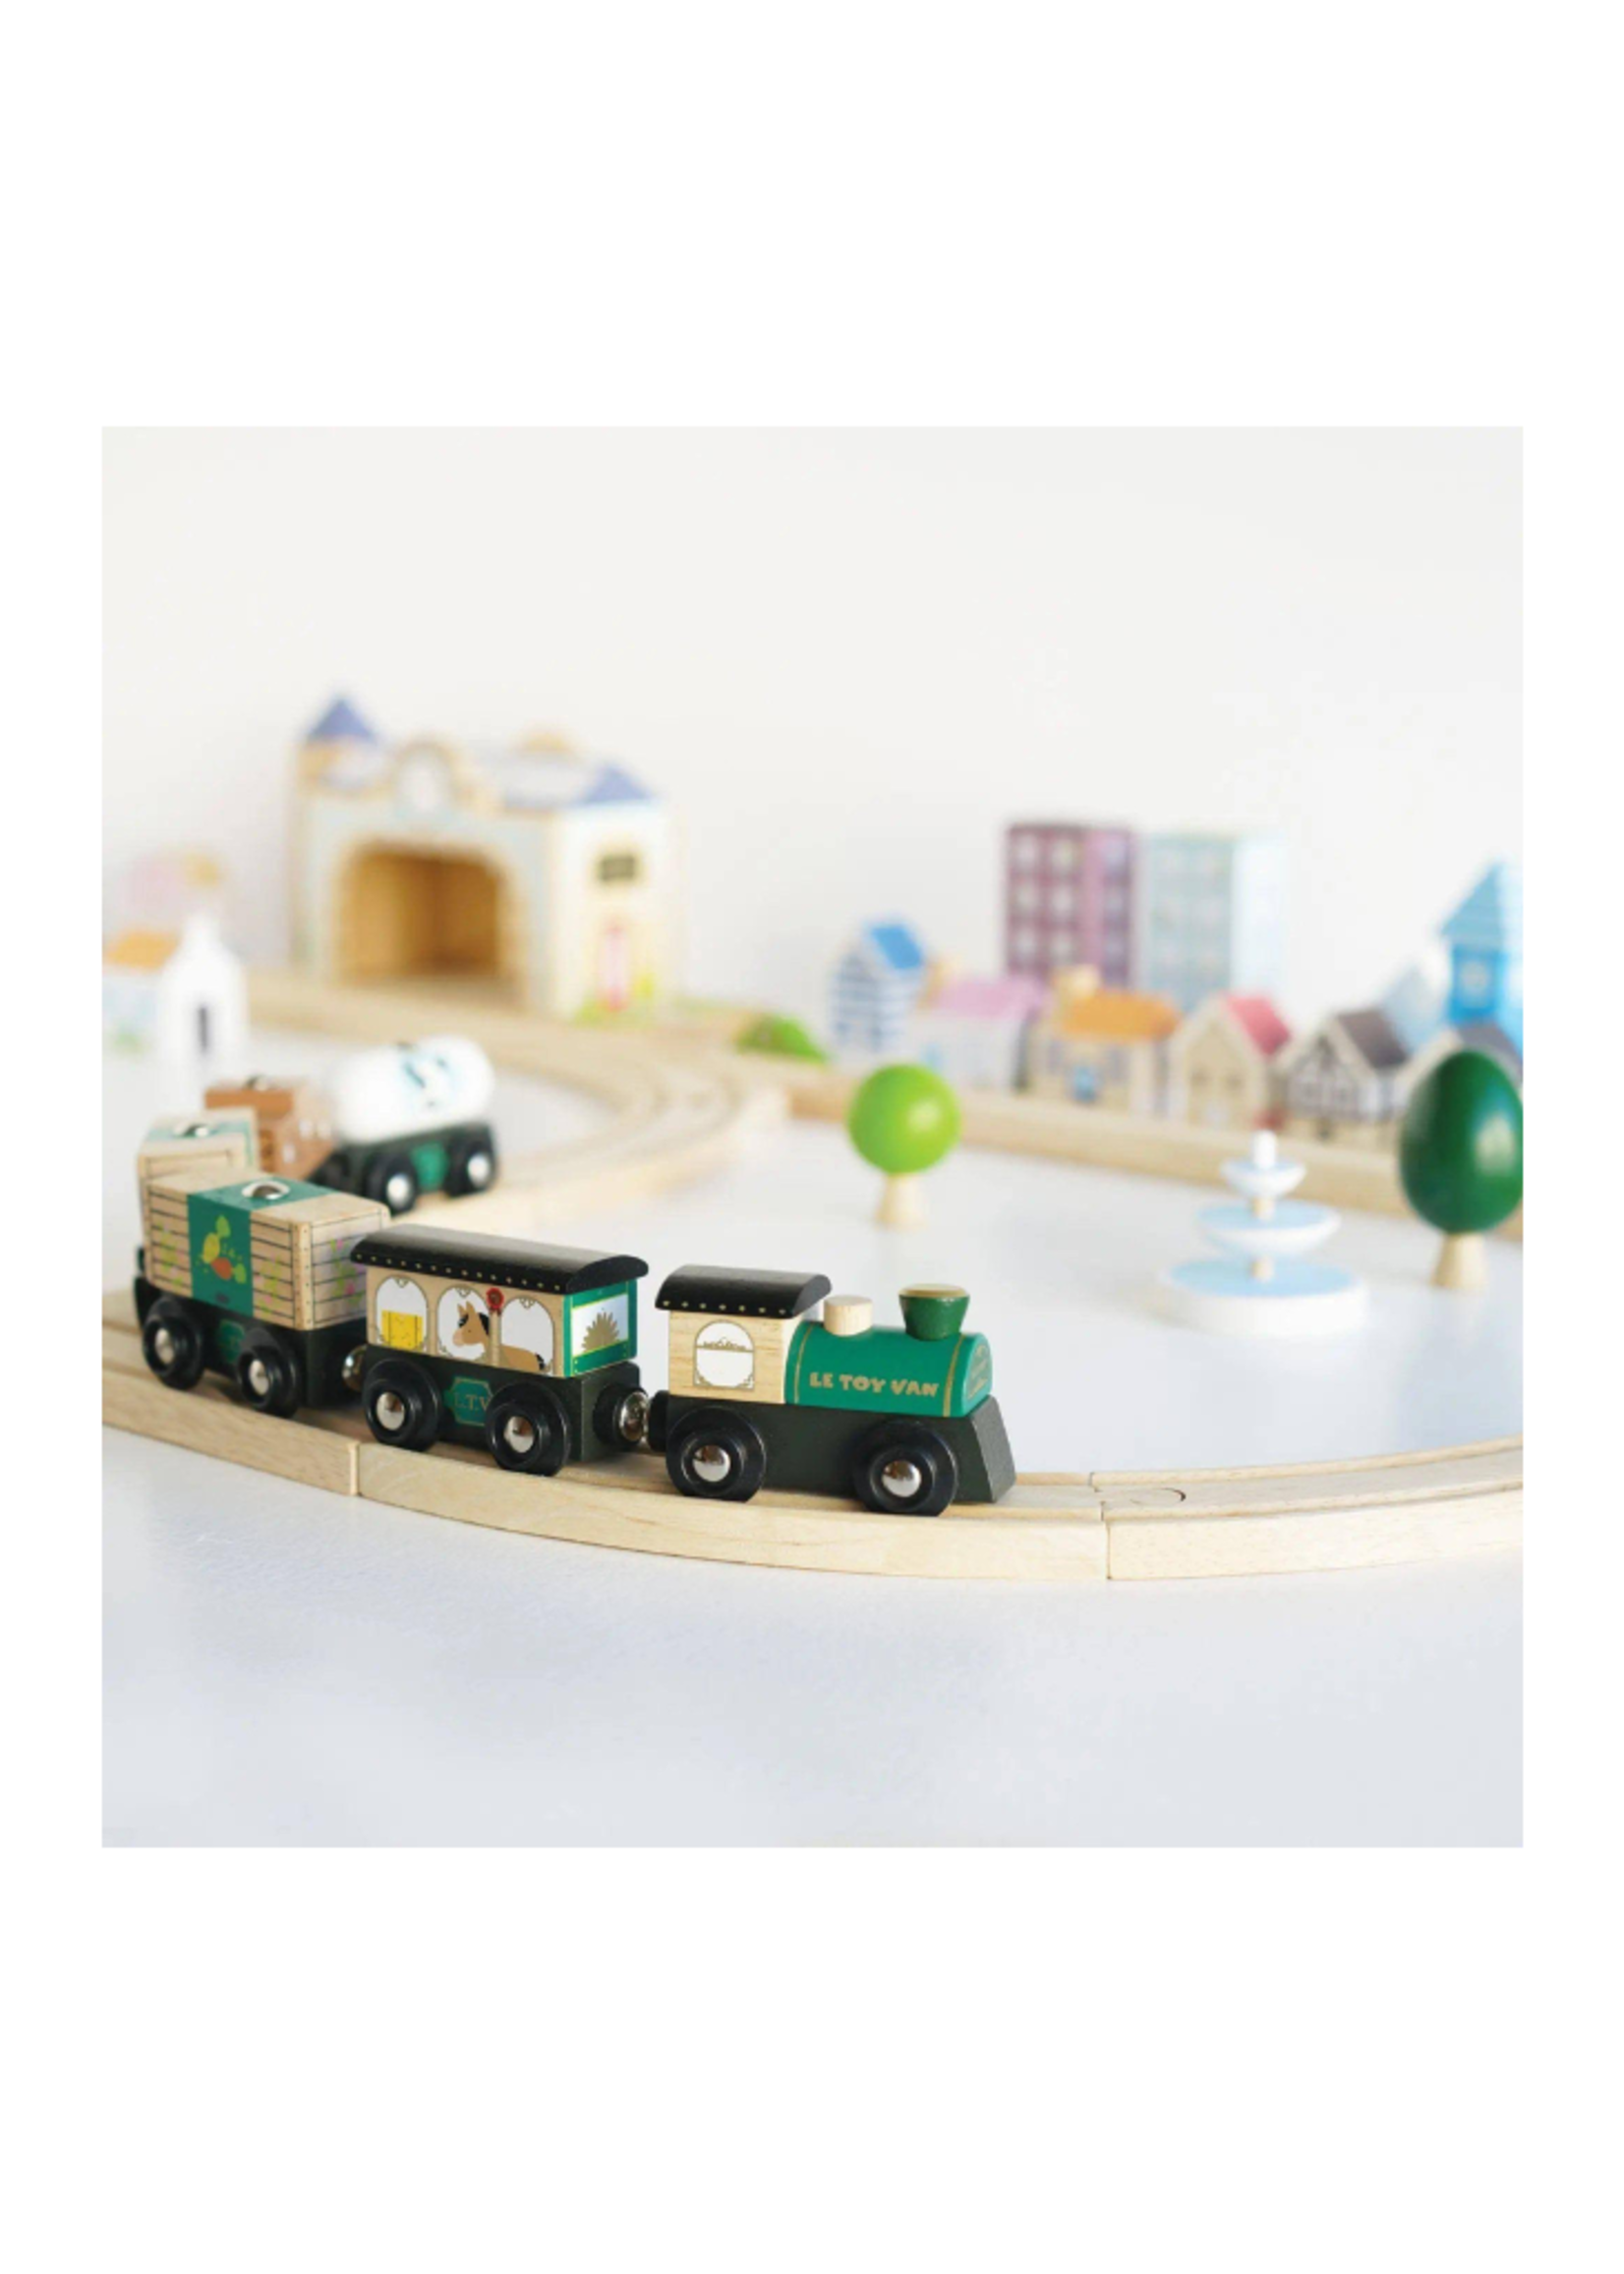 Le Toy Van Royal Express Railway Train Set